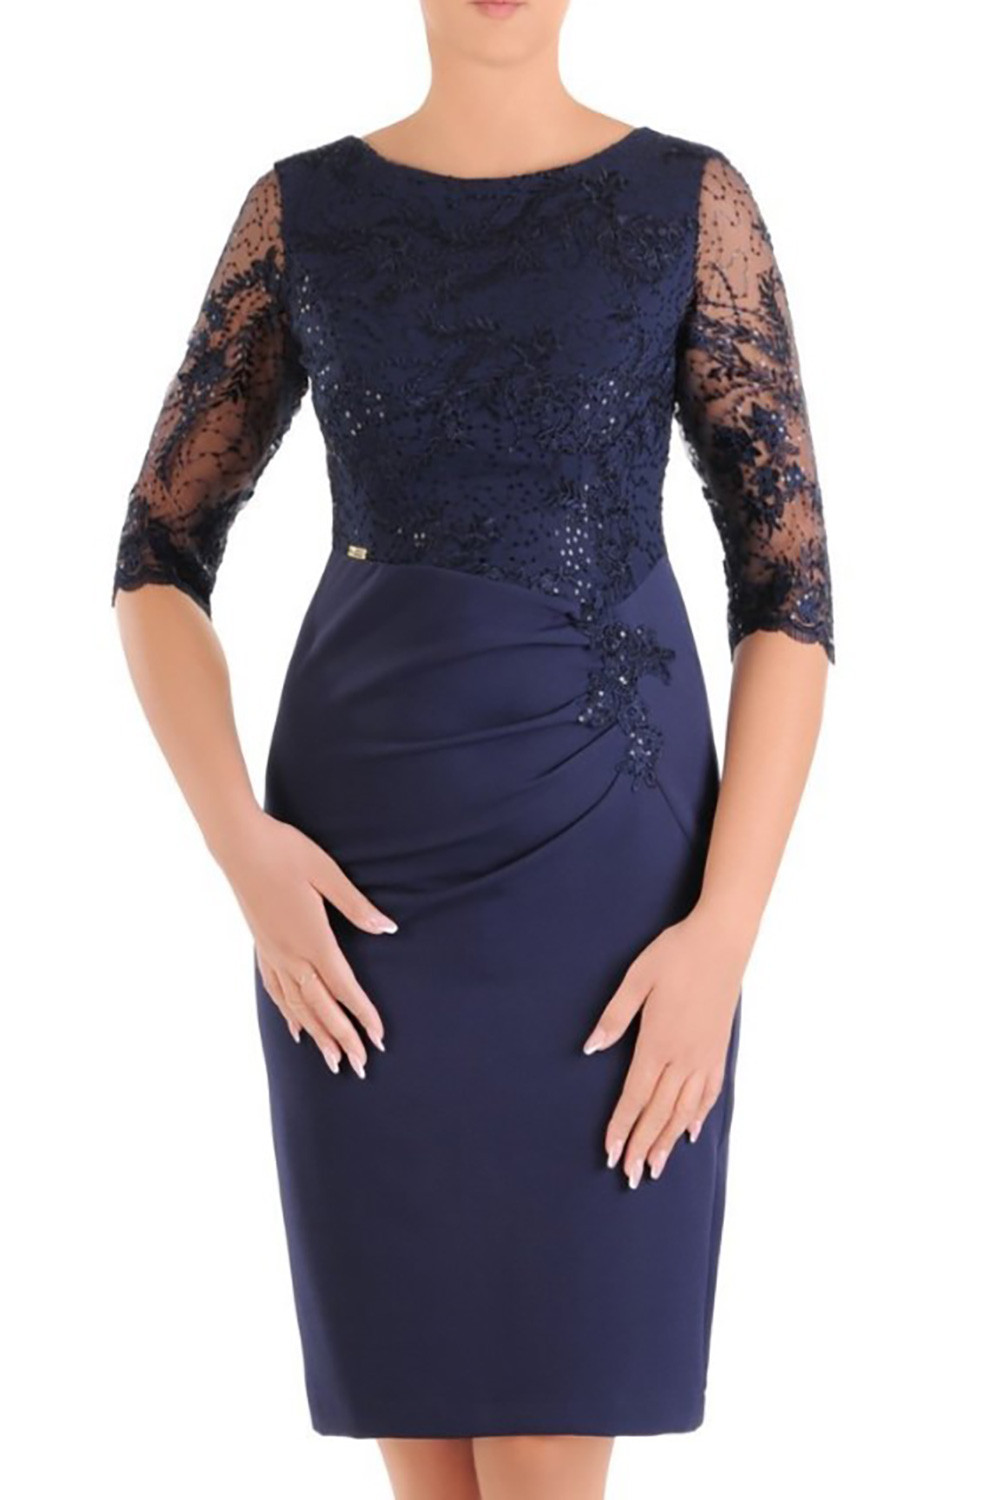 Dámské šaty Silwane model 152763 - Jersa tmavě modrá 42